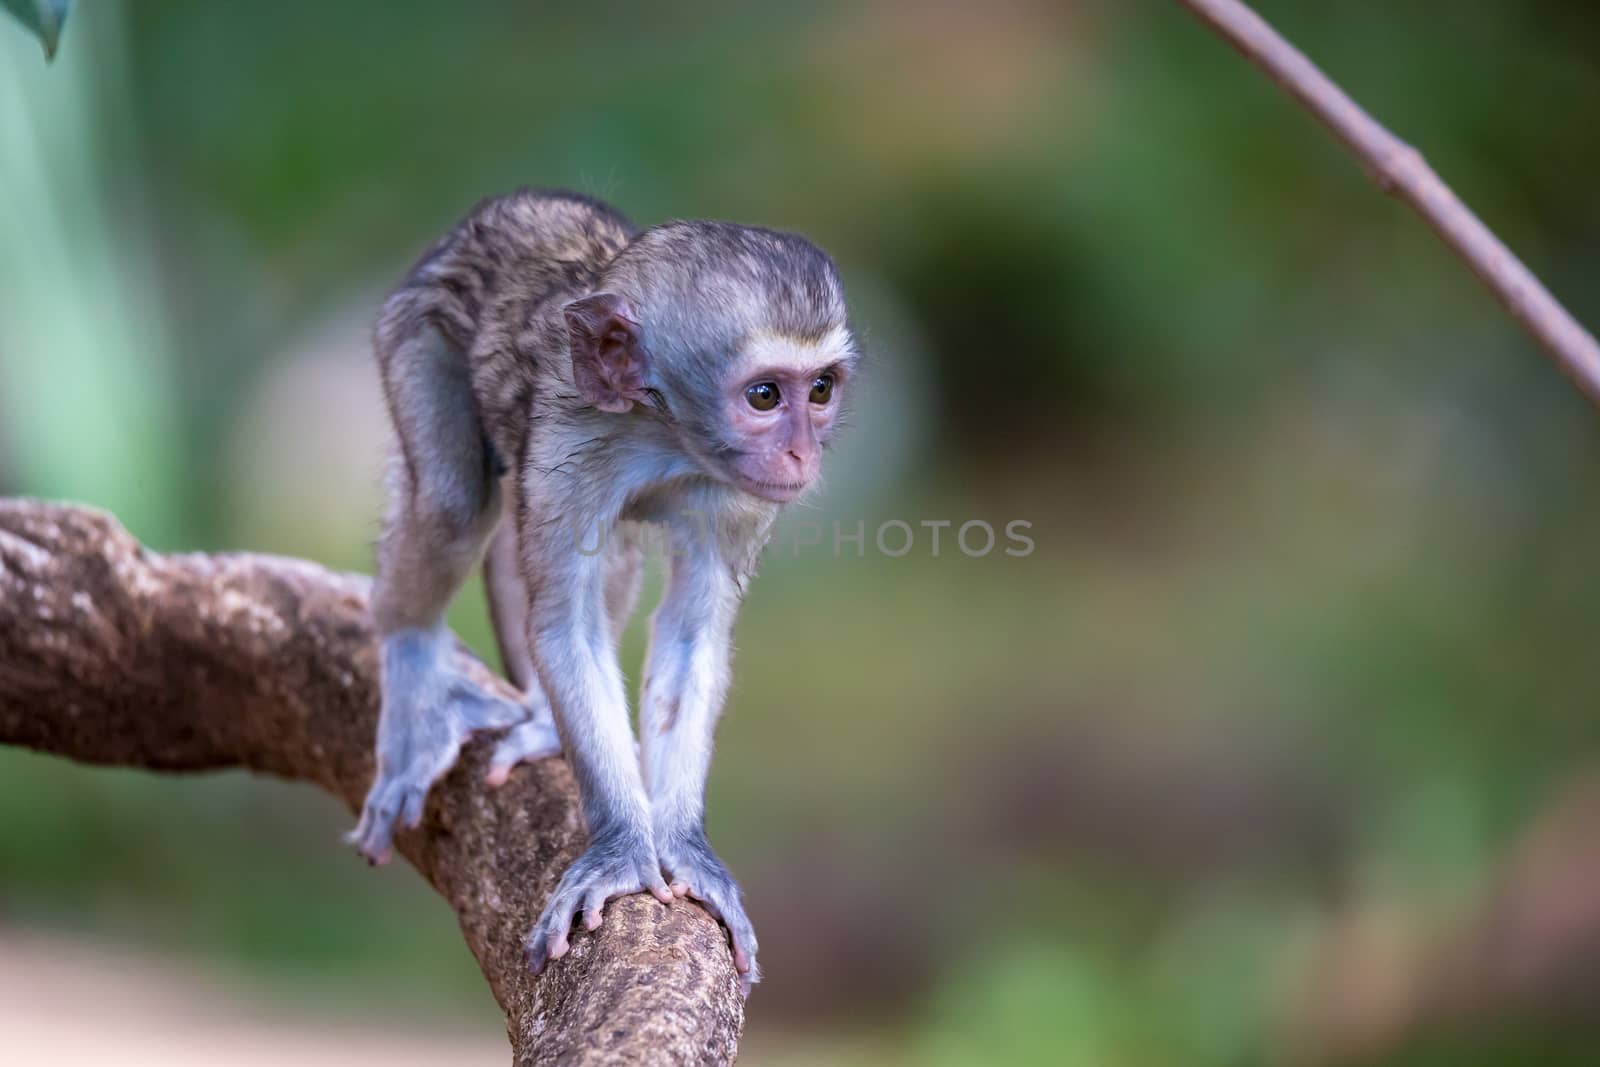 One little monkey walks along a branch